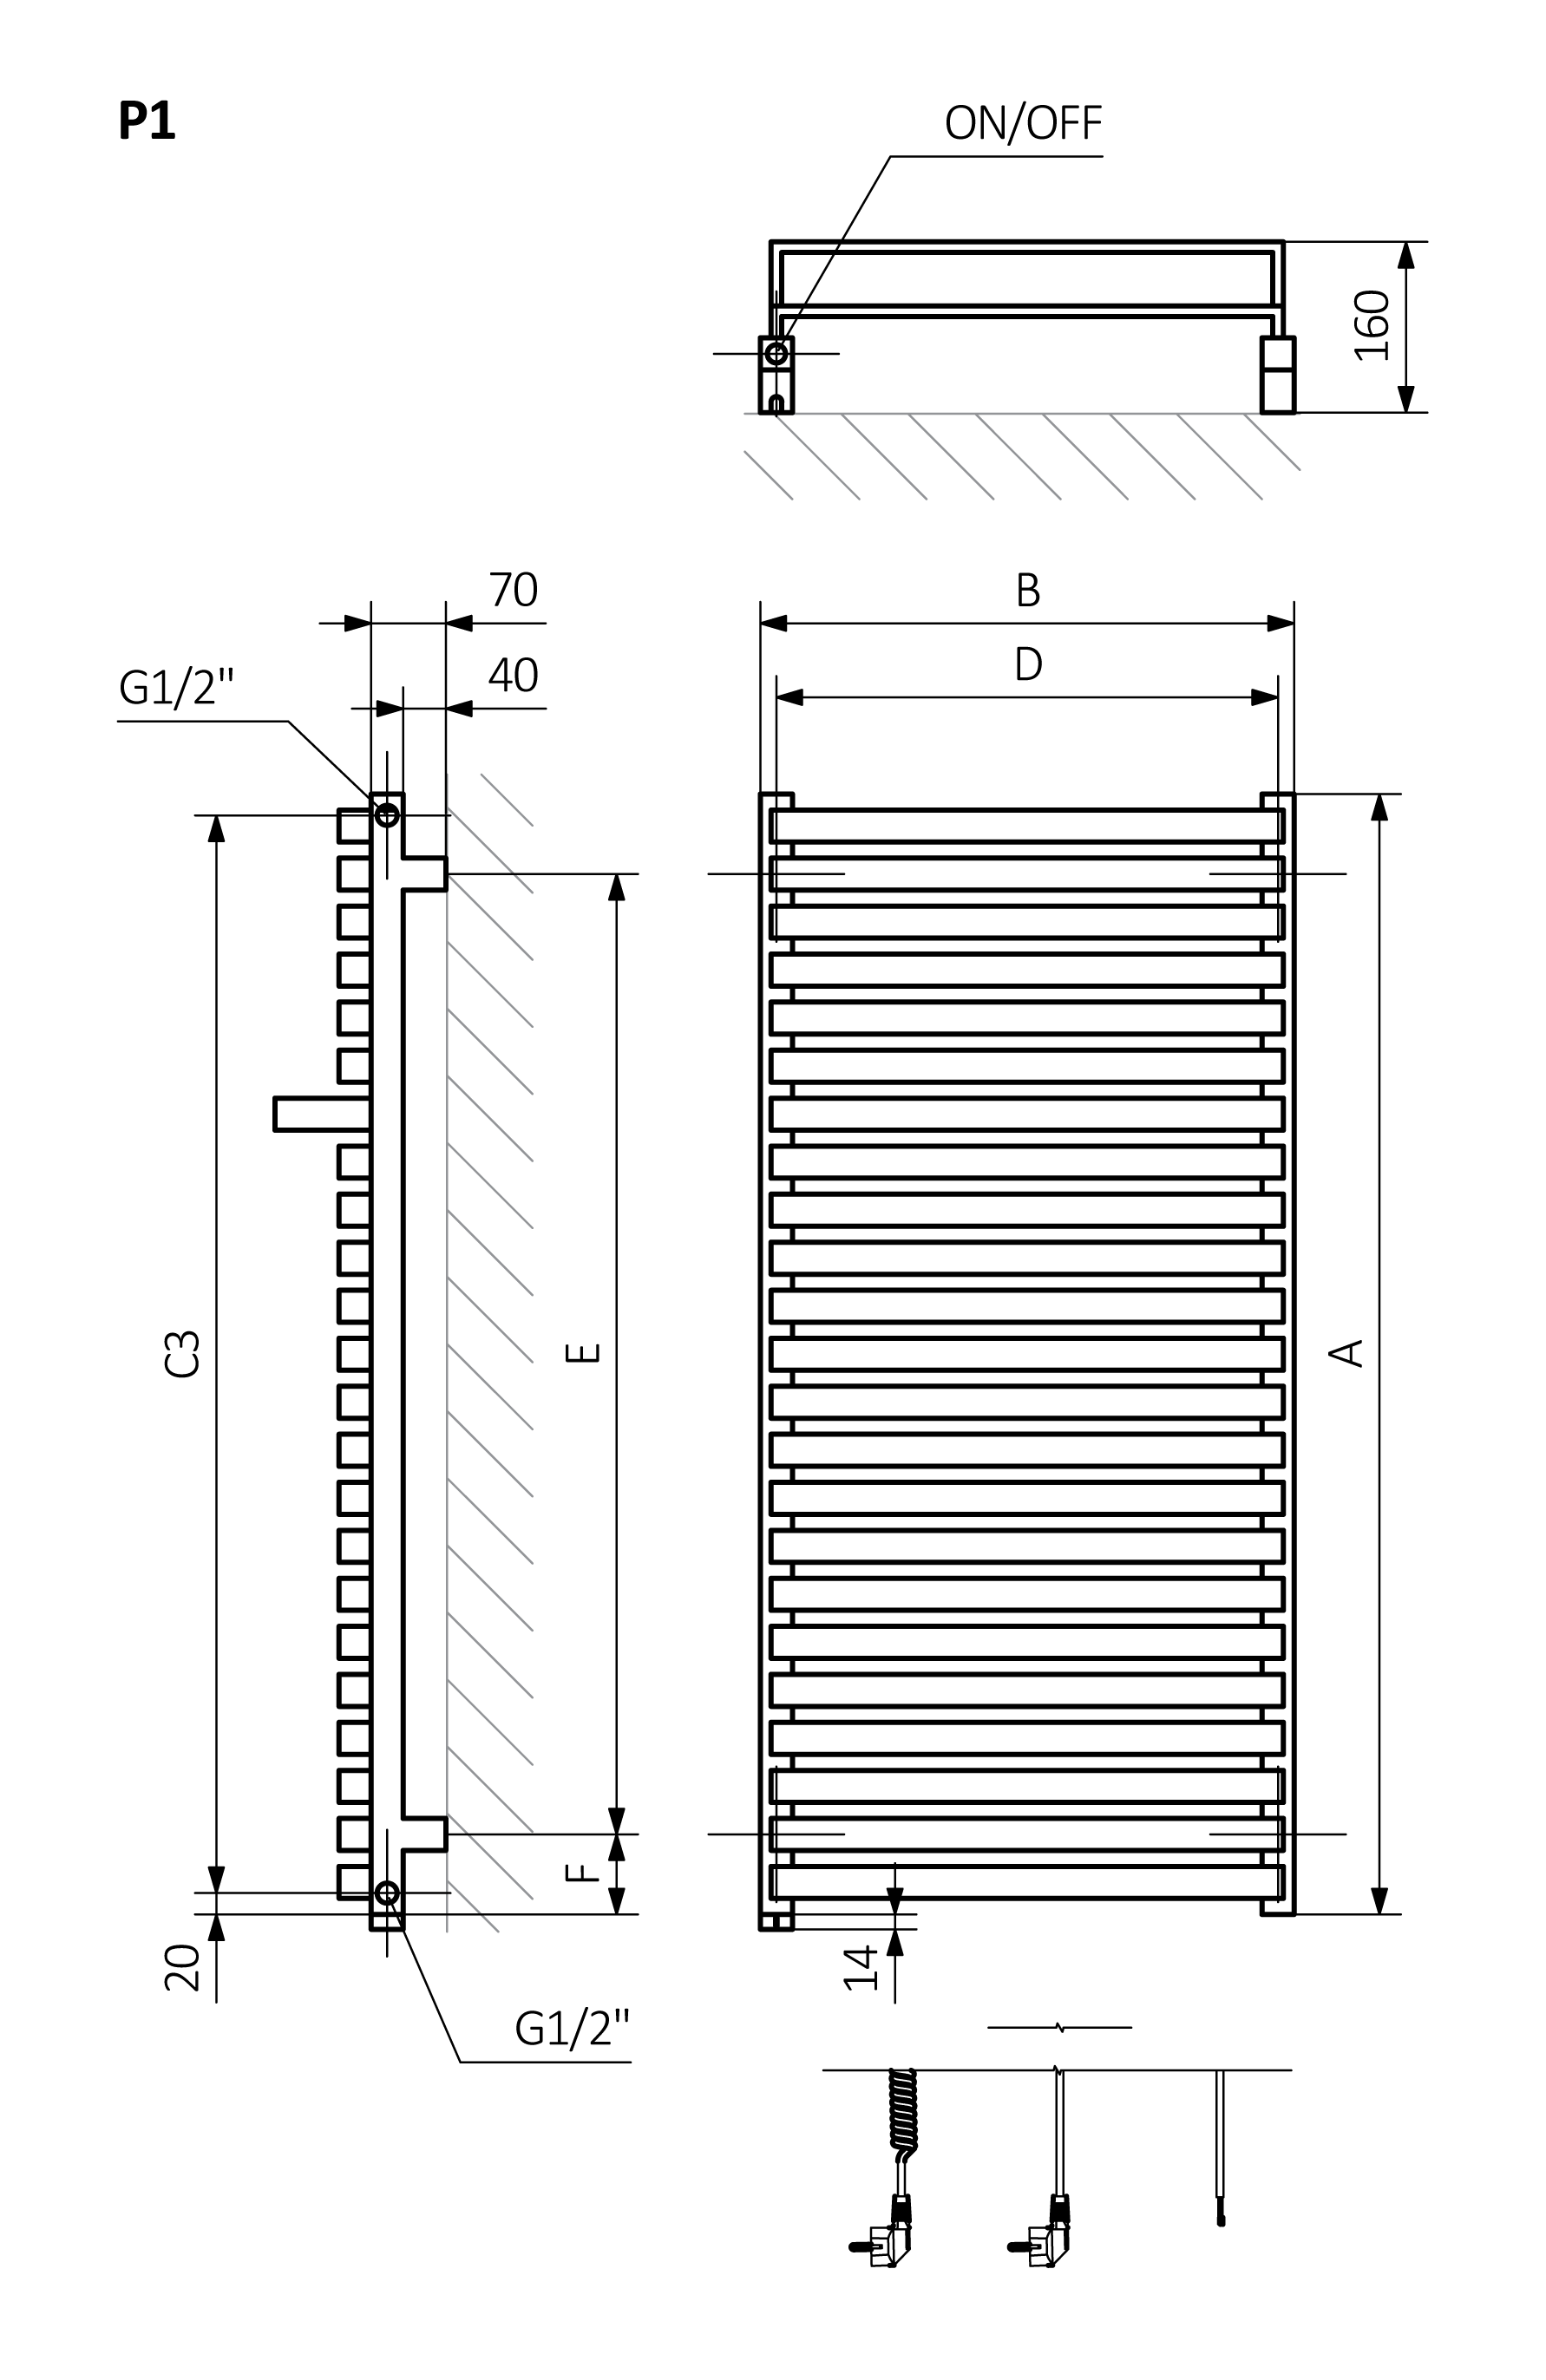 A - высота B - ширина C1-C5 - расстояние между стыками D - расстояние между анкерами в горизонтальном E - расстояние между опорами в вертикальном F - расстояние от нижней оси точек крепления до нижнего края коллектора
